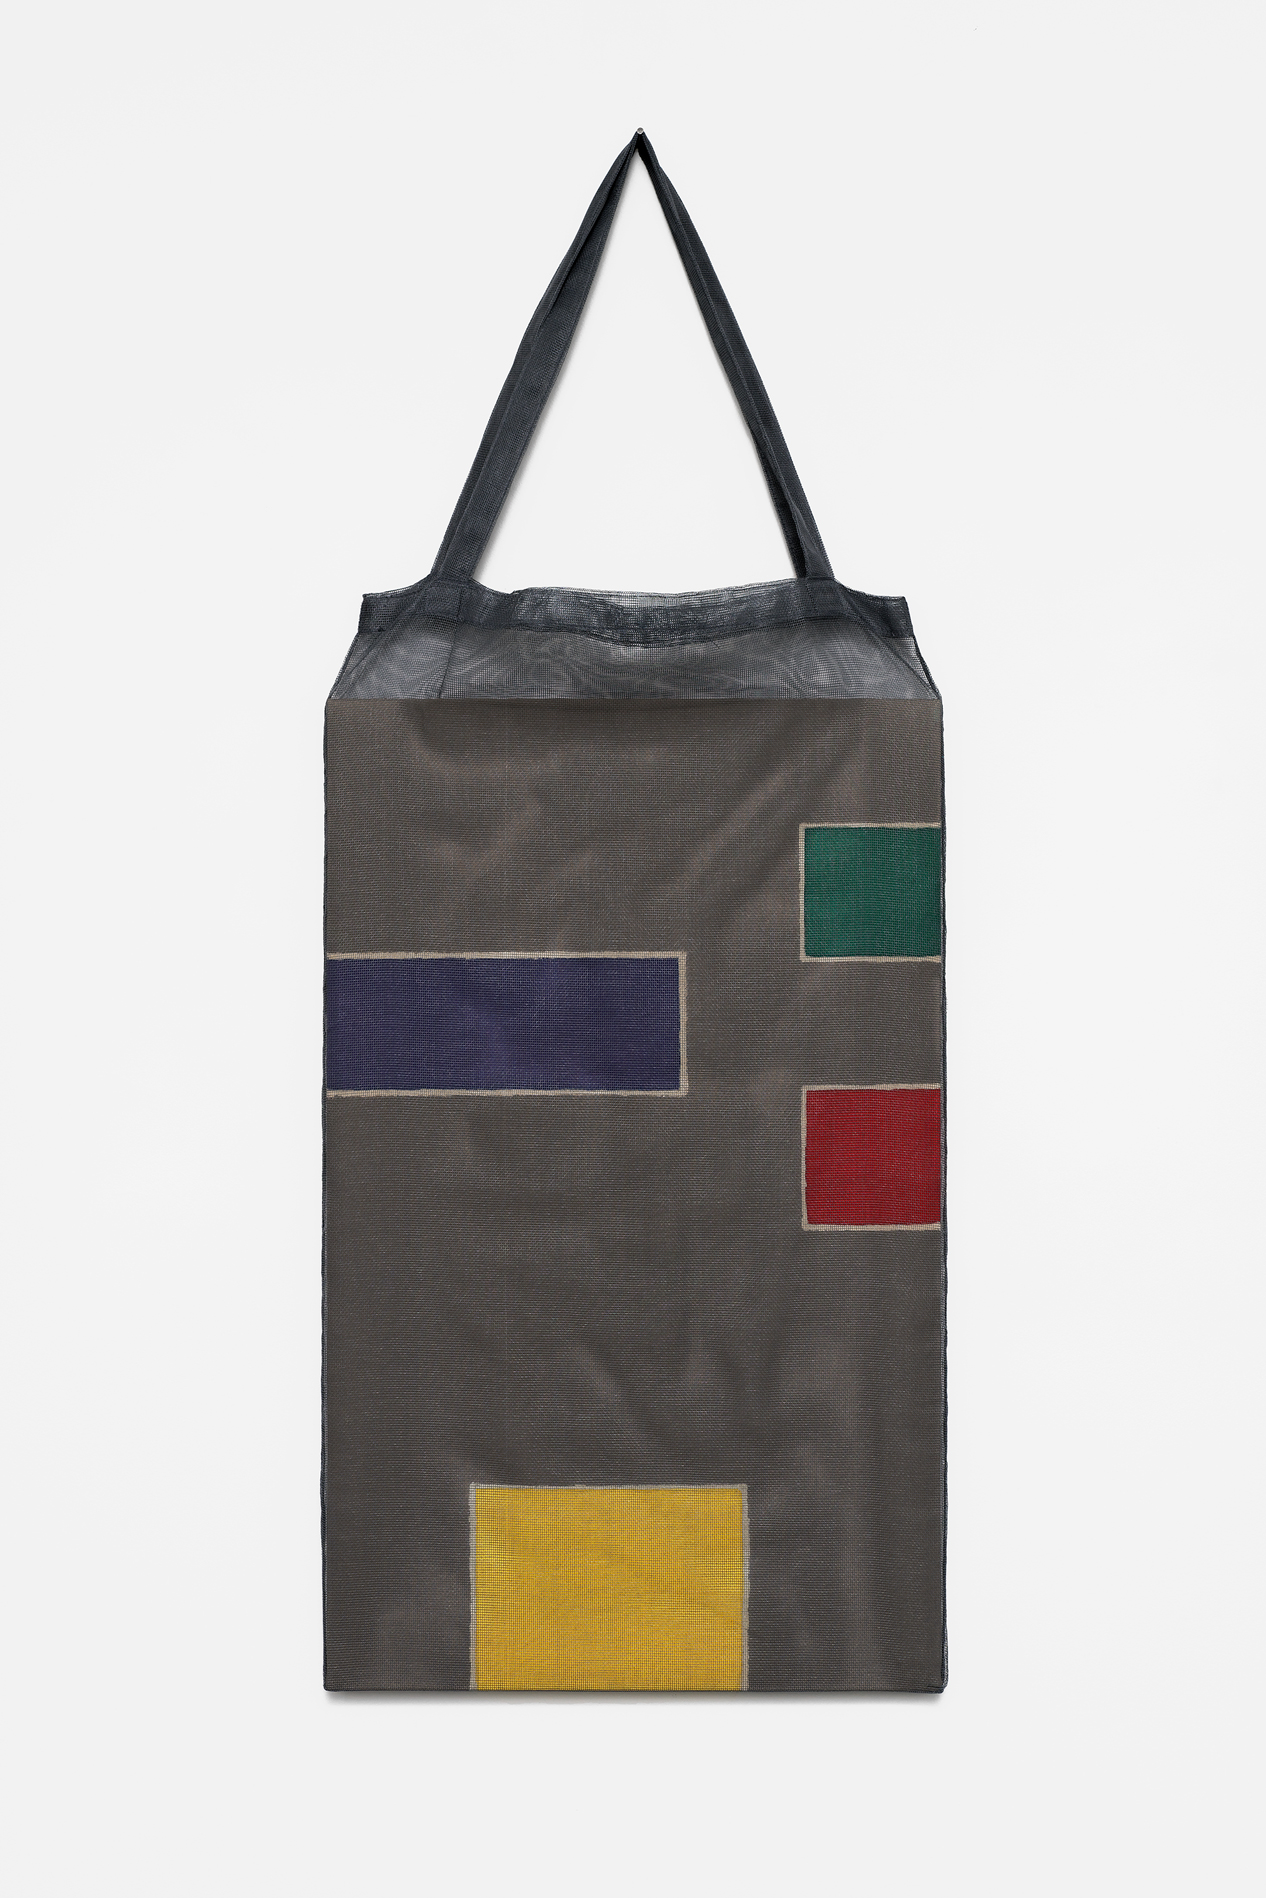 , 2018, Pigments on cotton fabric [batik] and bag, 118 x 47 x 3 cm, , unique artwork, Photo: Aurlien Mole